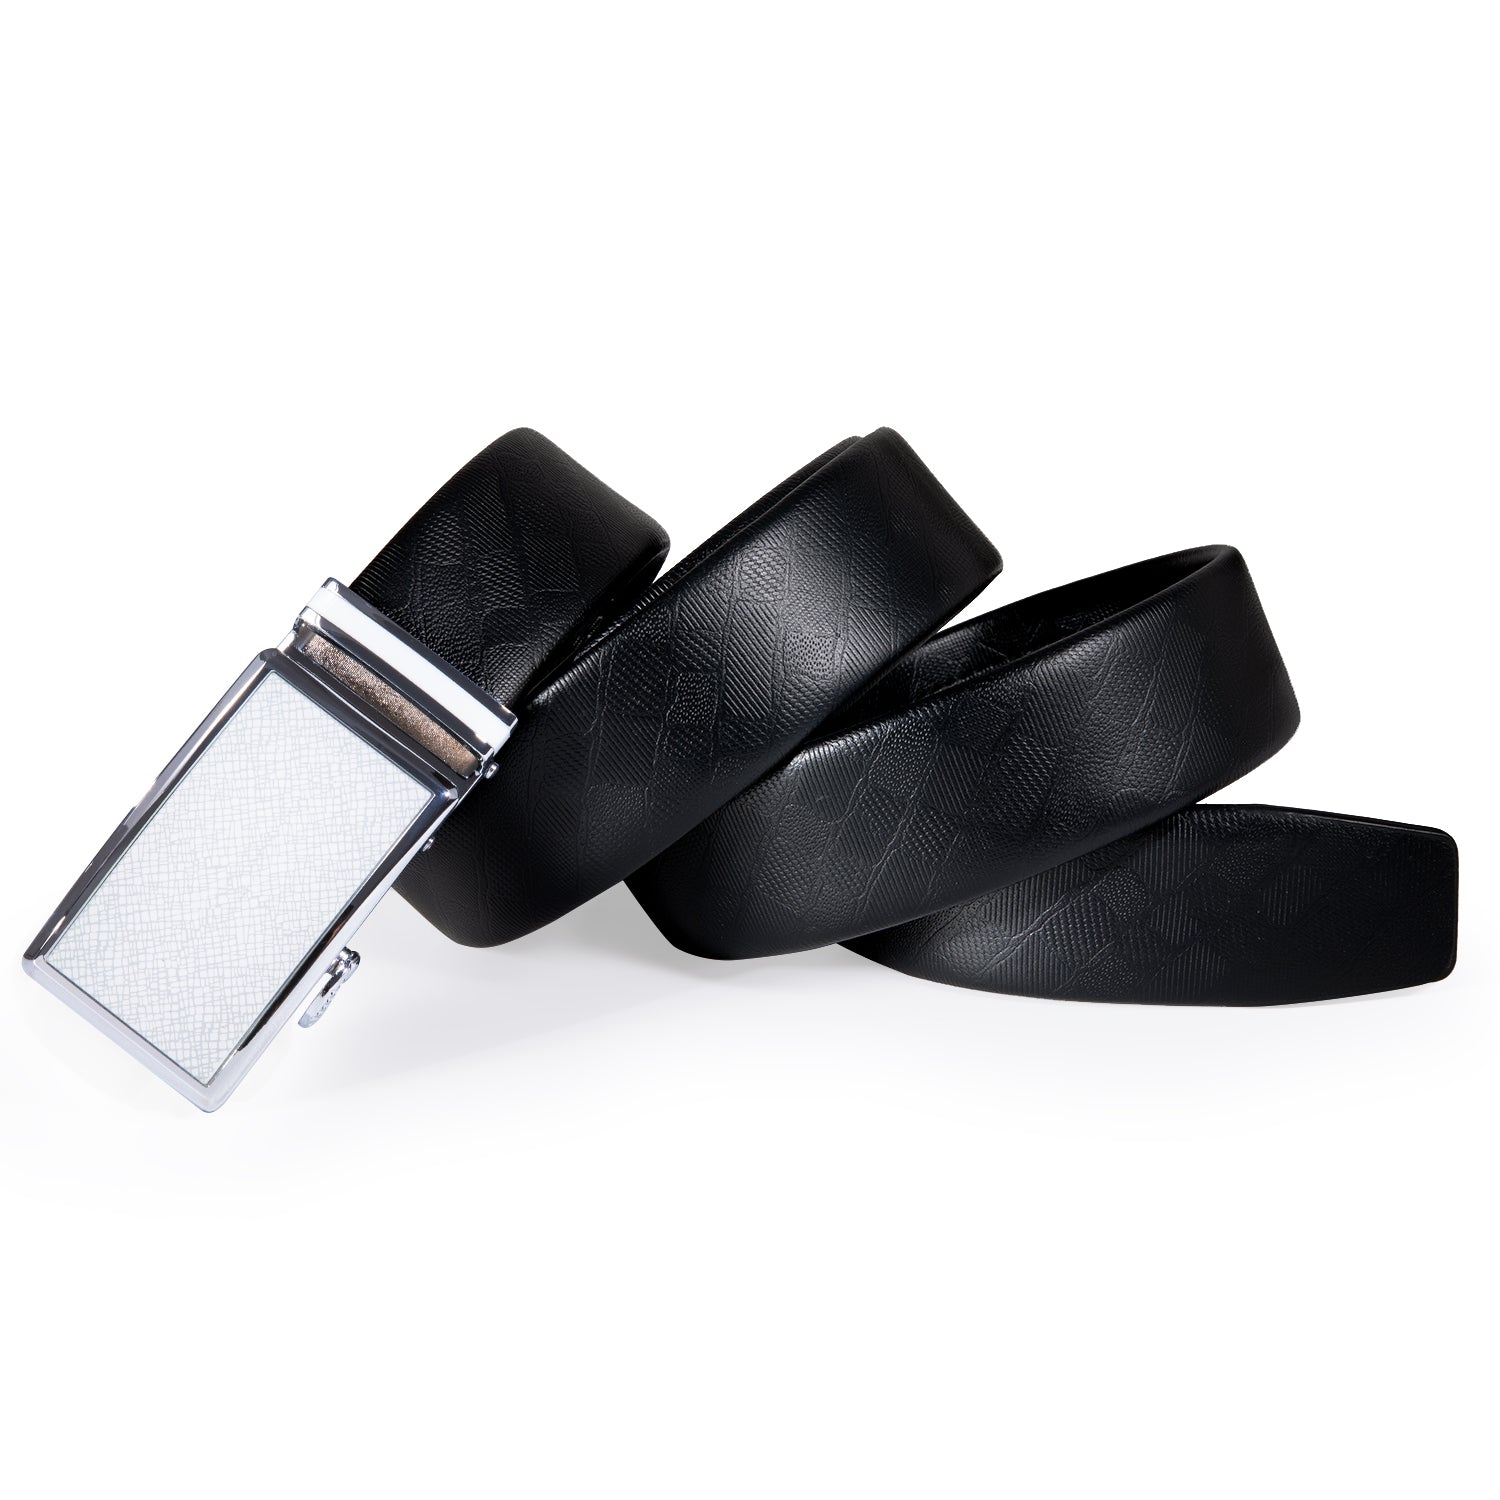 Adjustable men's belt